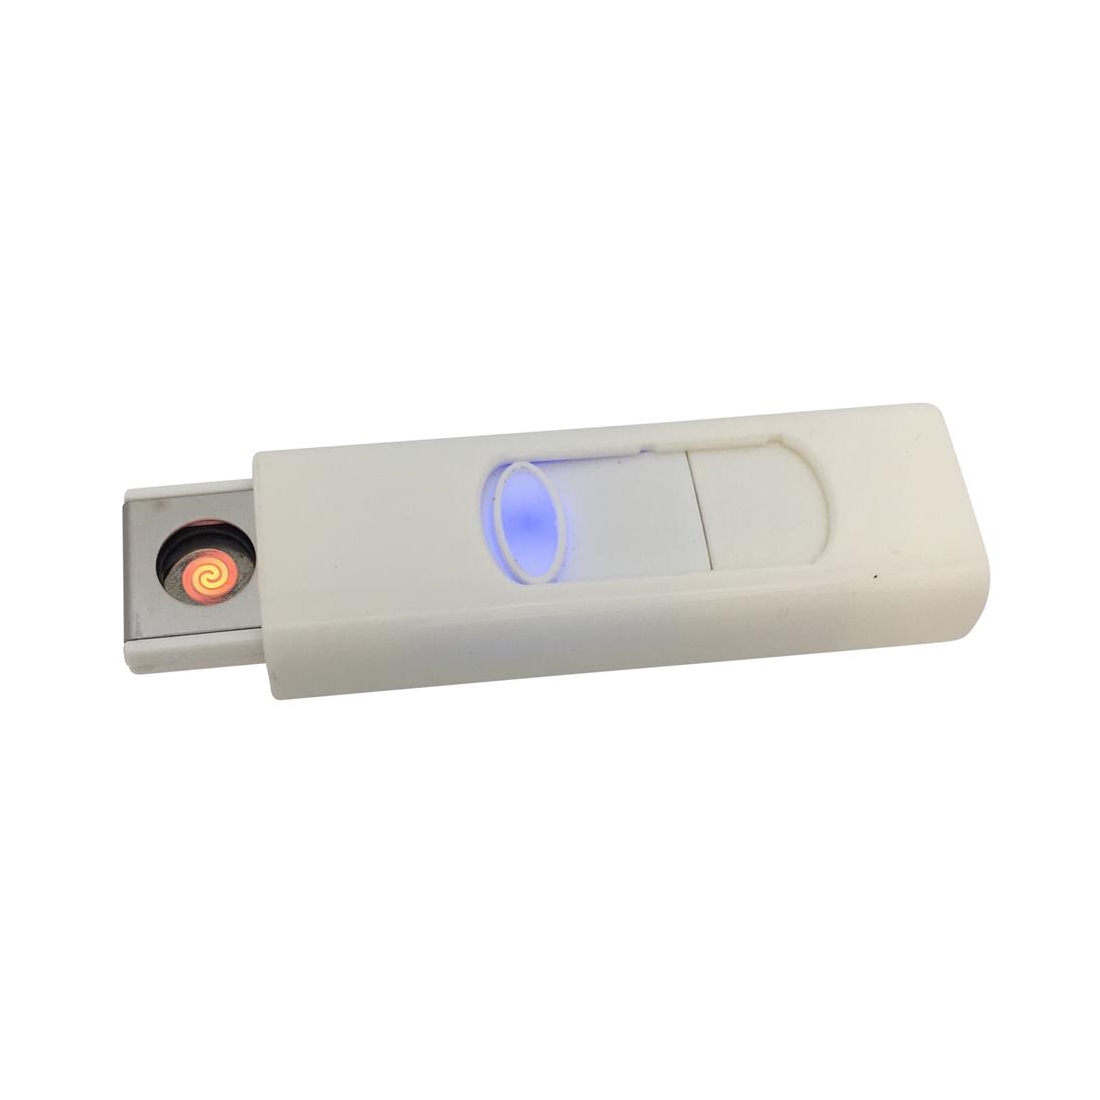 Feuerzeug mit USB Stick aufladbar, weiss - Elektronisches Akku USB Glühspiralen Feuerzeug windgeschützt